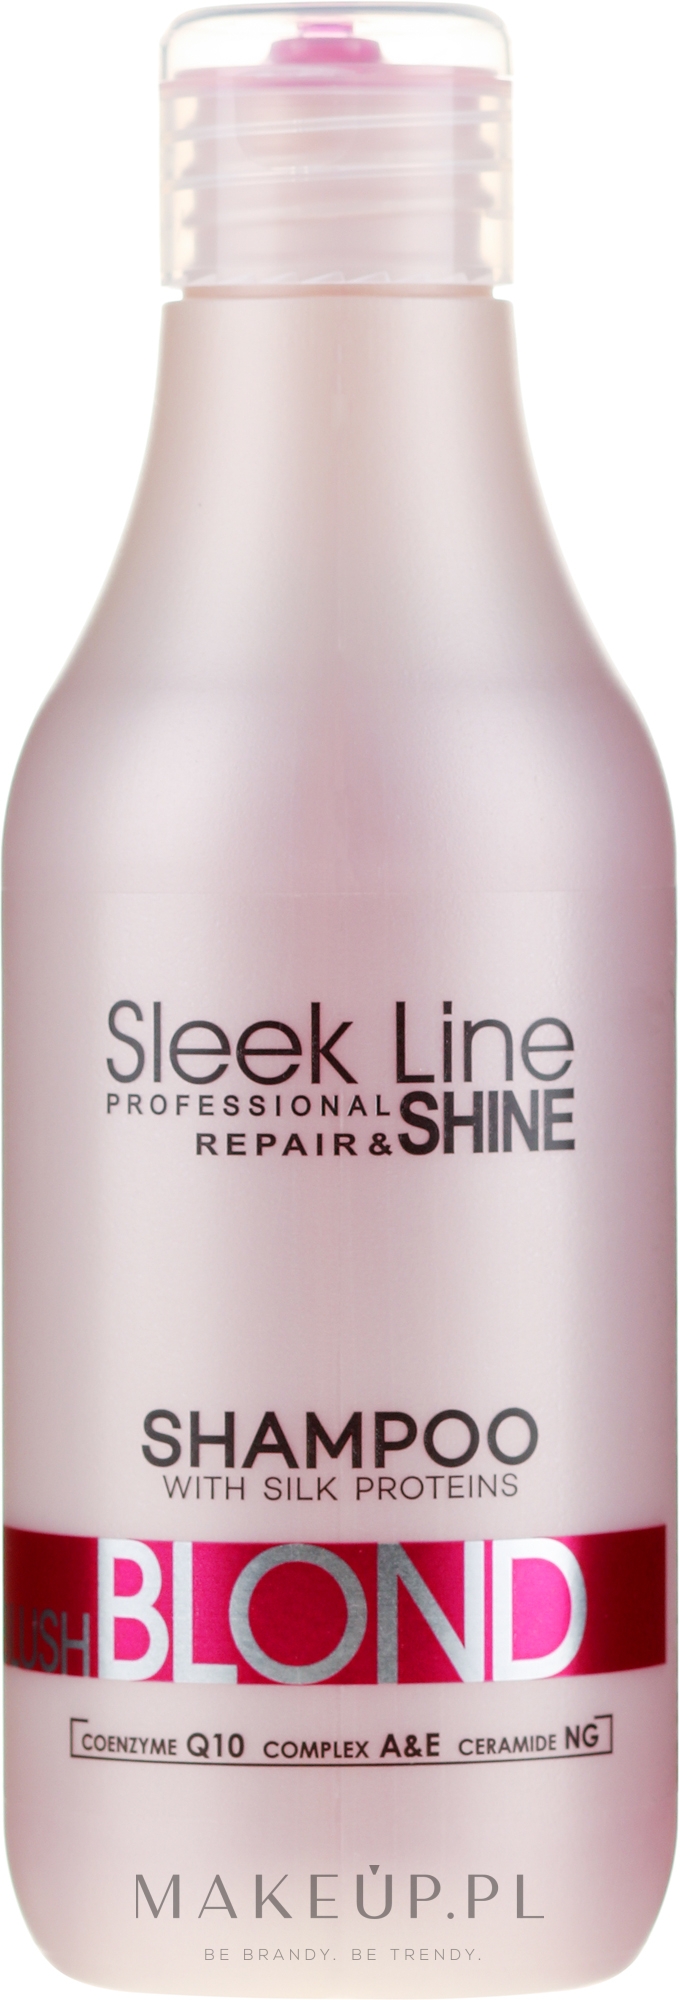 różowy szampon do włosów sleek line